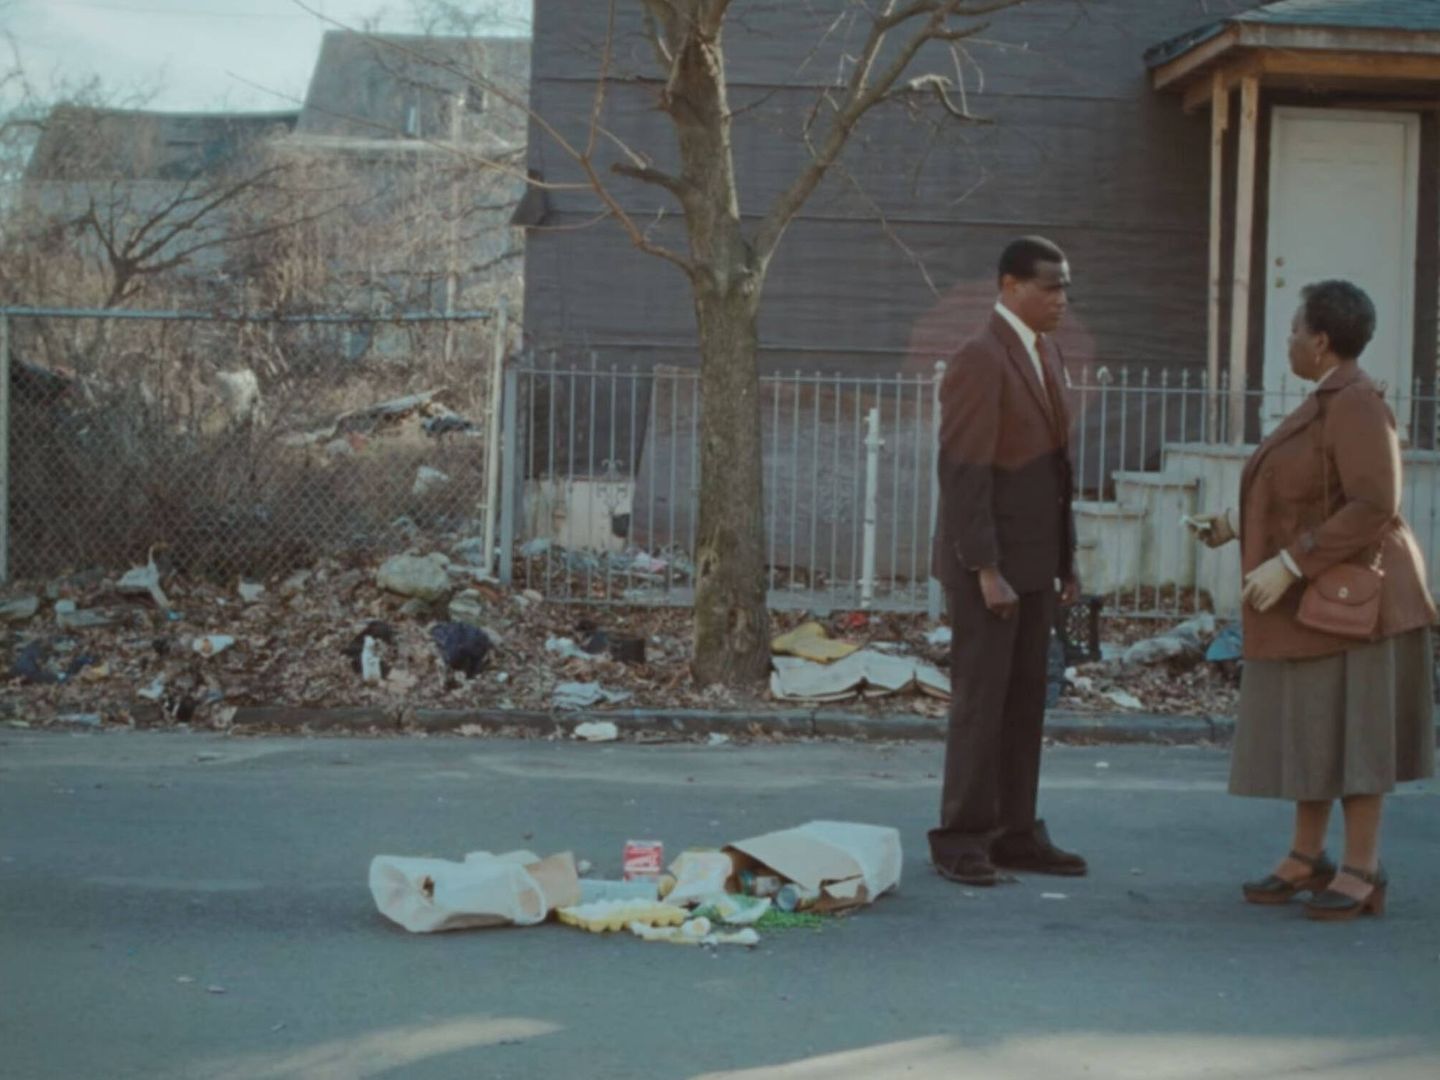  Una escena del corto de Malia Obama. (Sundance Film Institute)